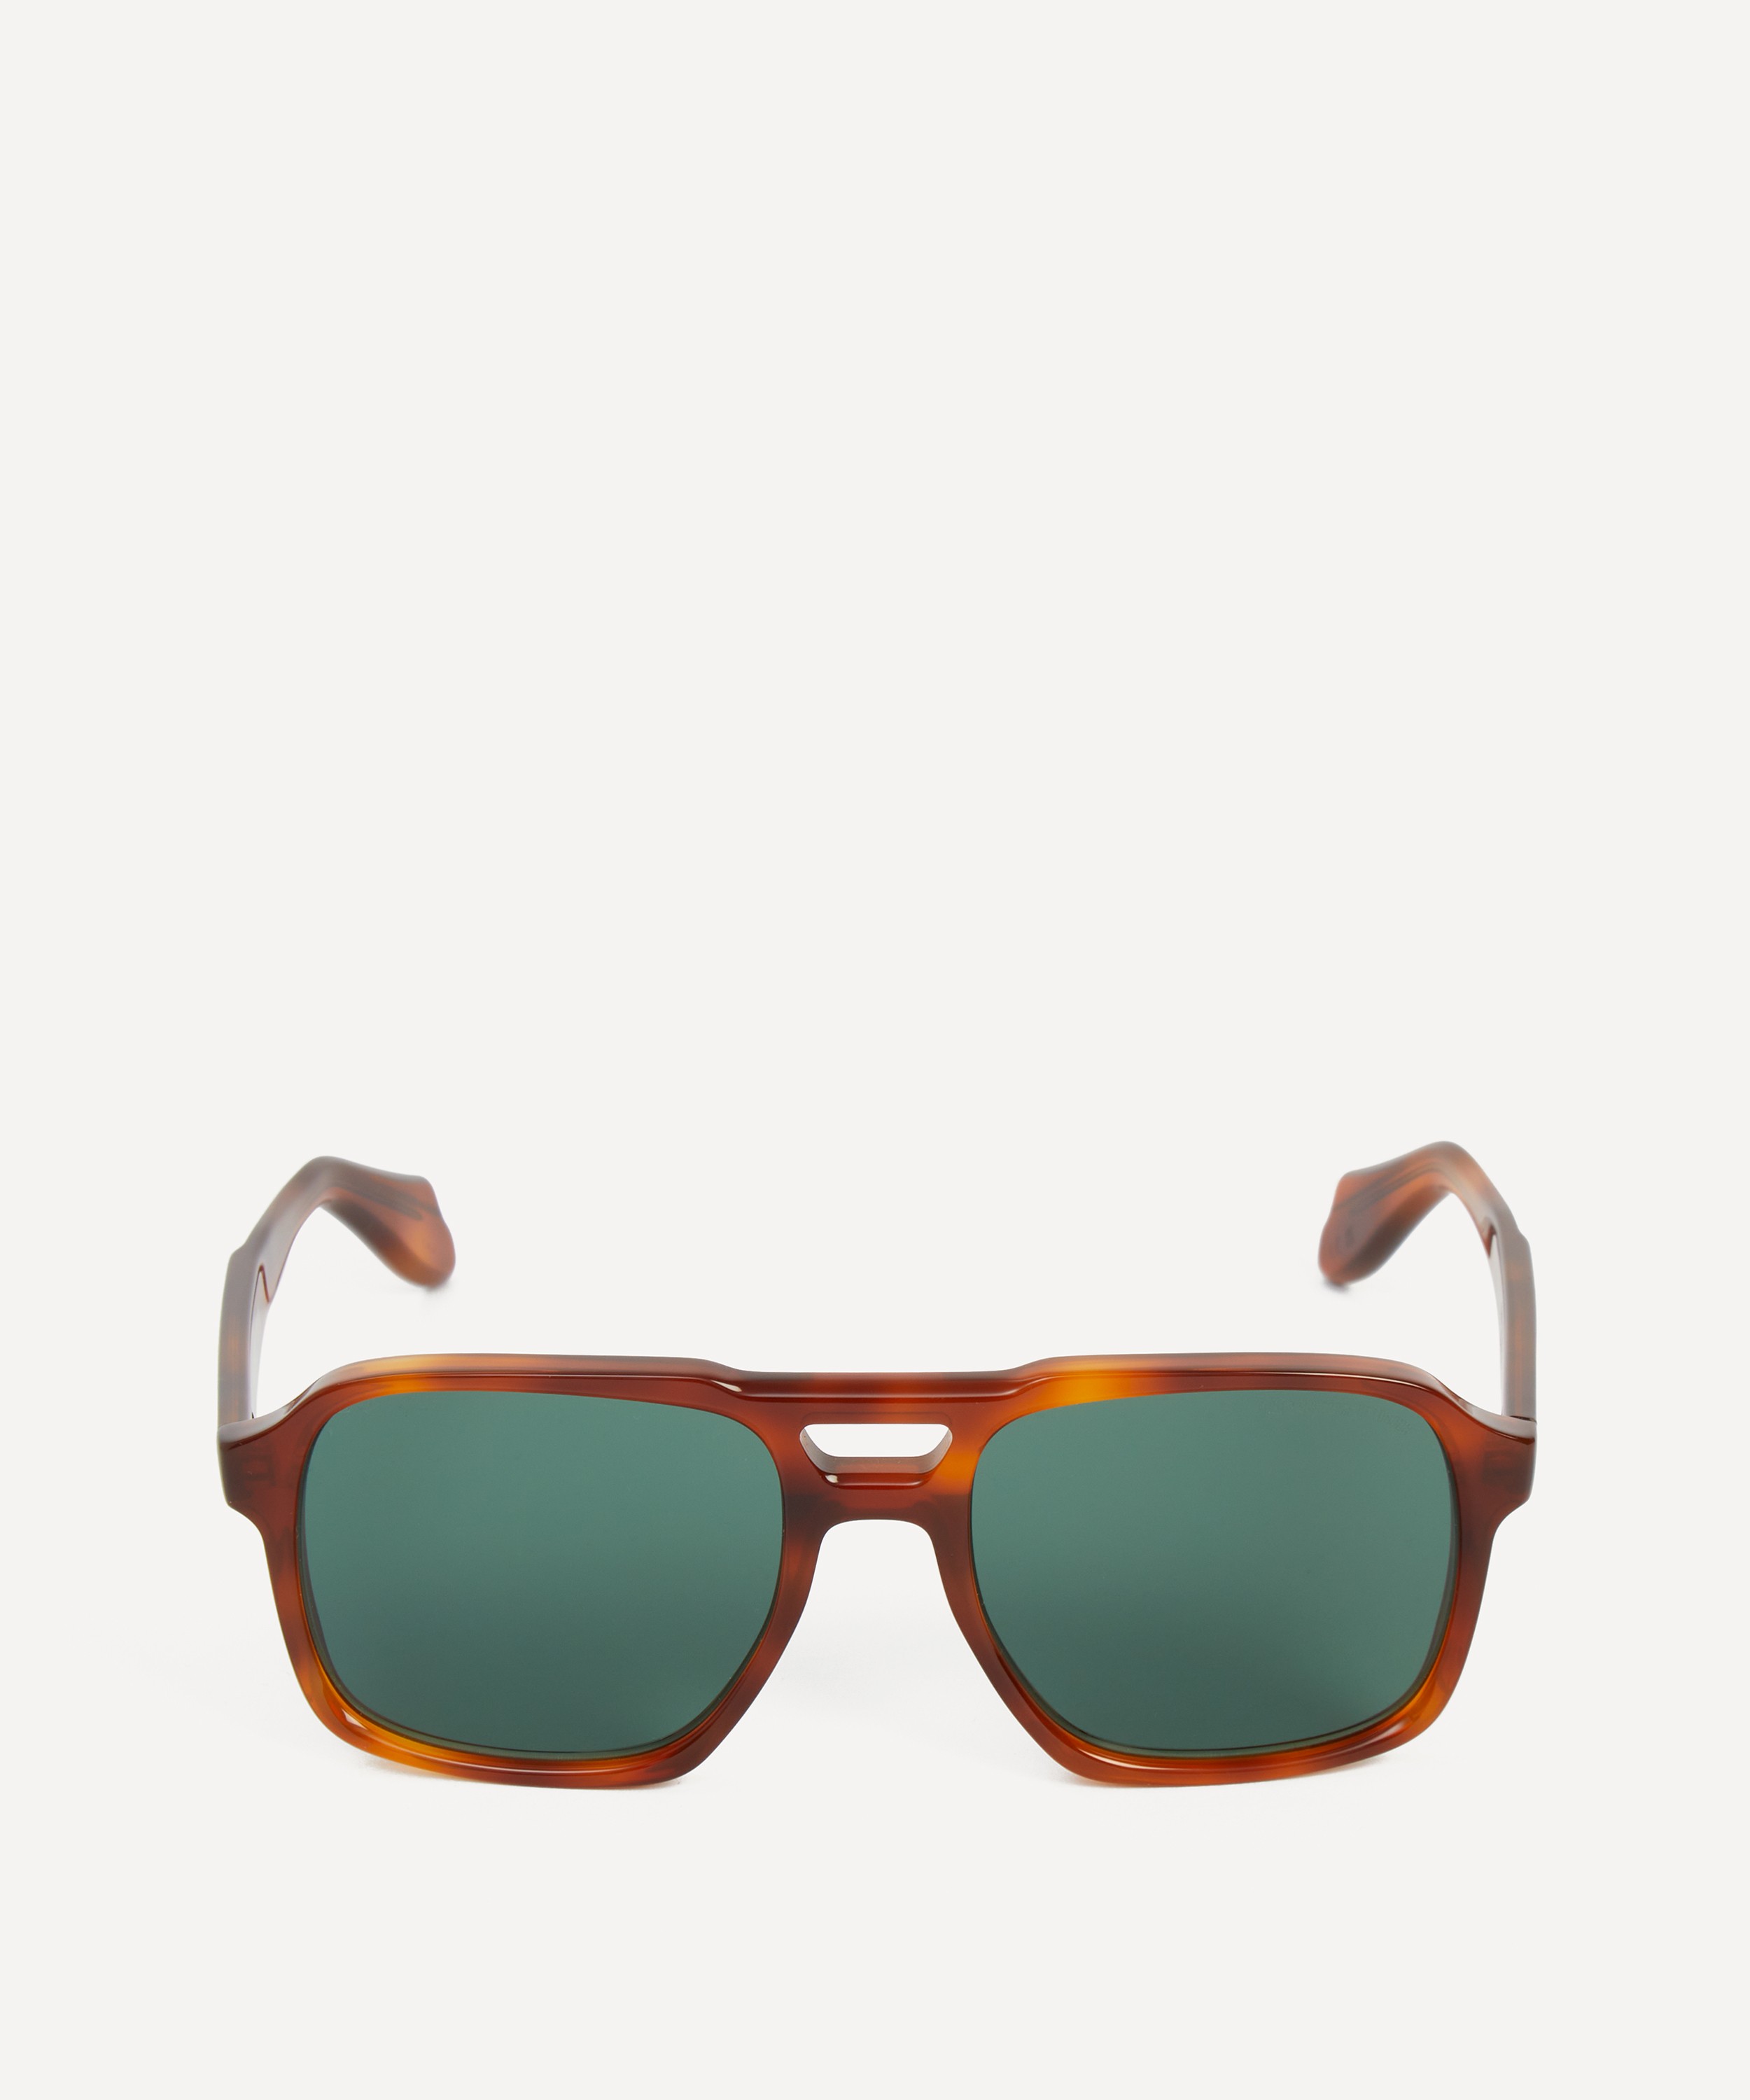 Cutler And Gross - 1394 Aviator Sunglasses